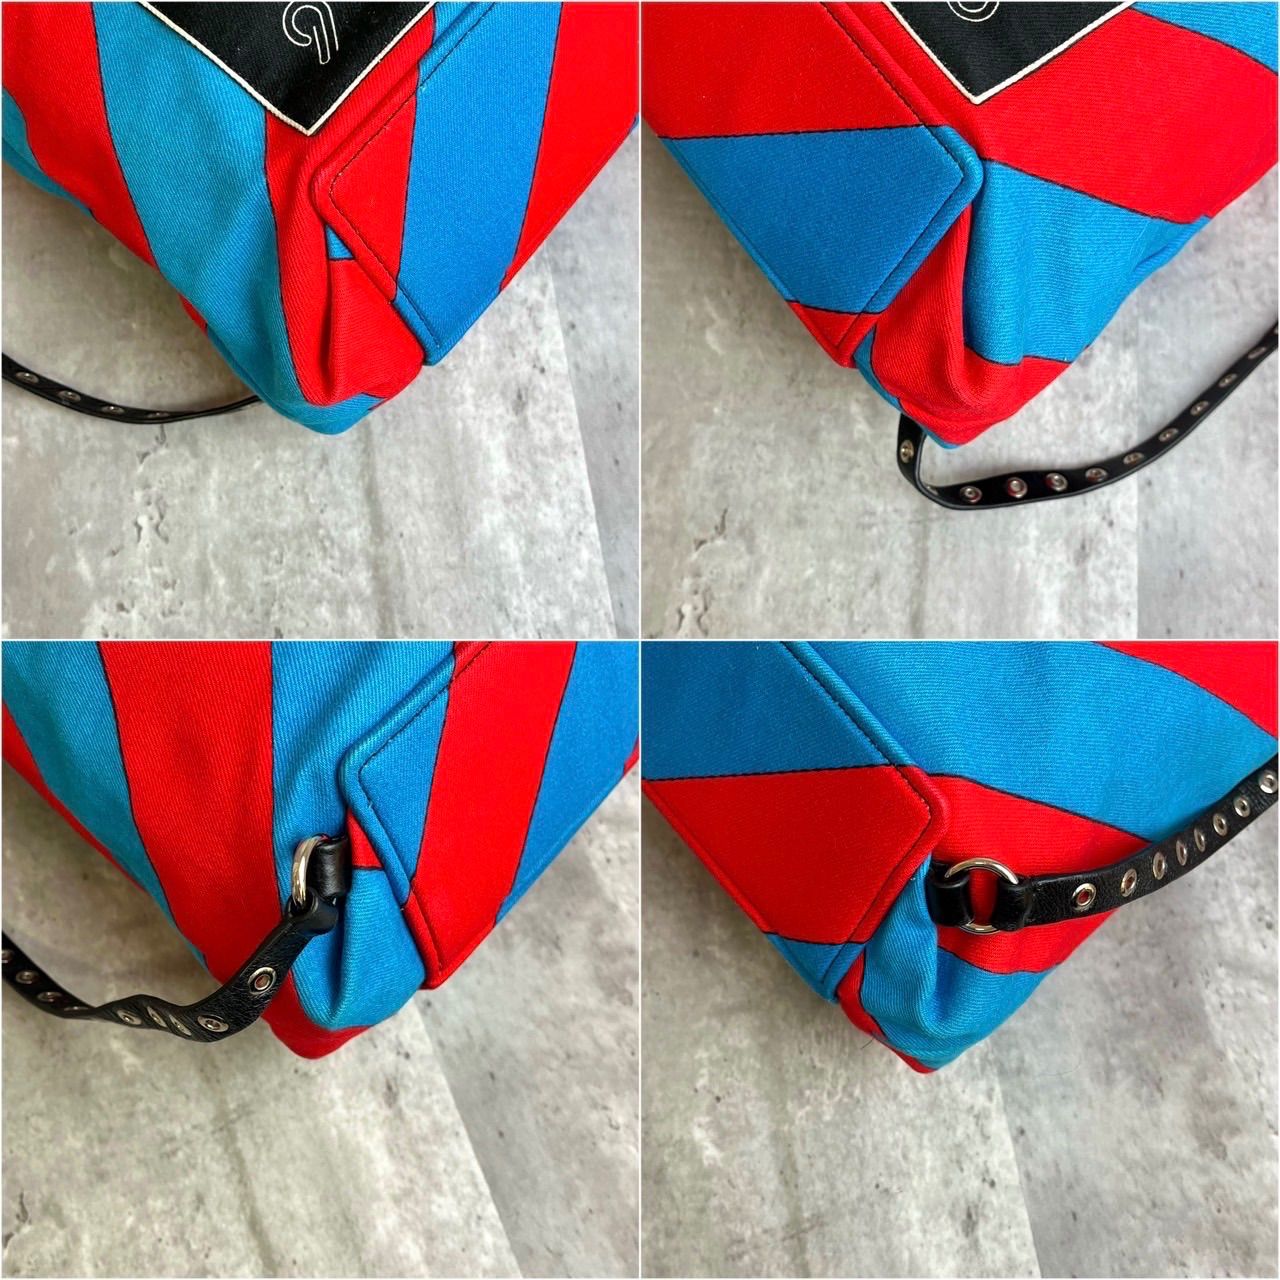 ✨良品✨MIUMIU ミュウミュウ ハンドバッグ 3way リュックサック バッグパック ナップサック ボーダー ロゴシルバー金具 レザー キャンバス  レッド ブルー 赤色 青色 レディース - メルカリ